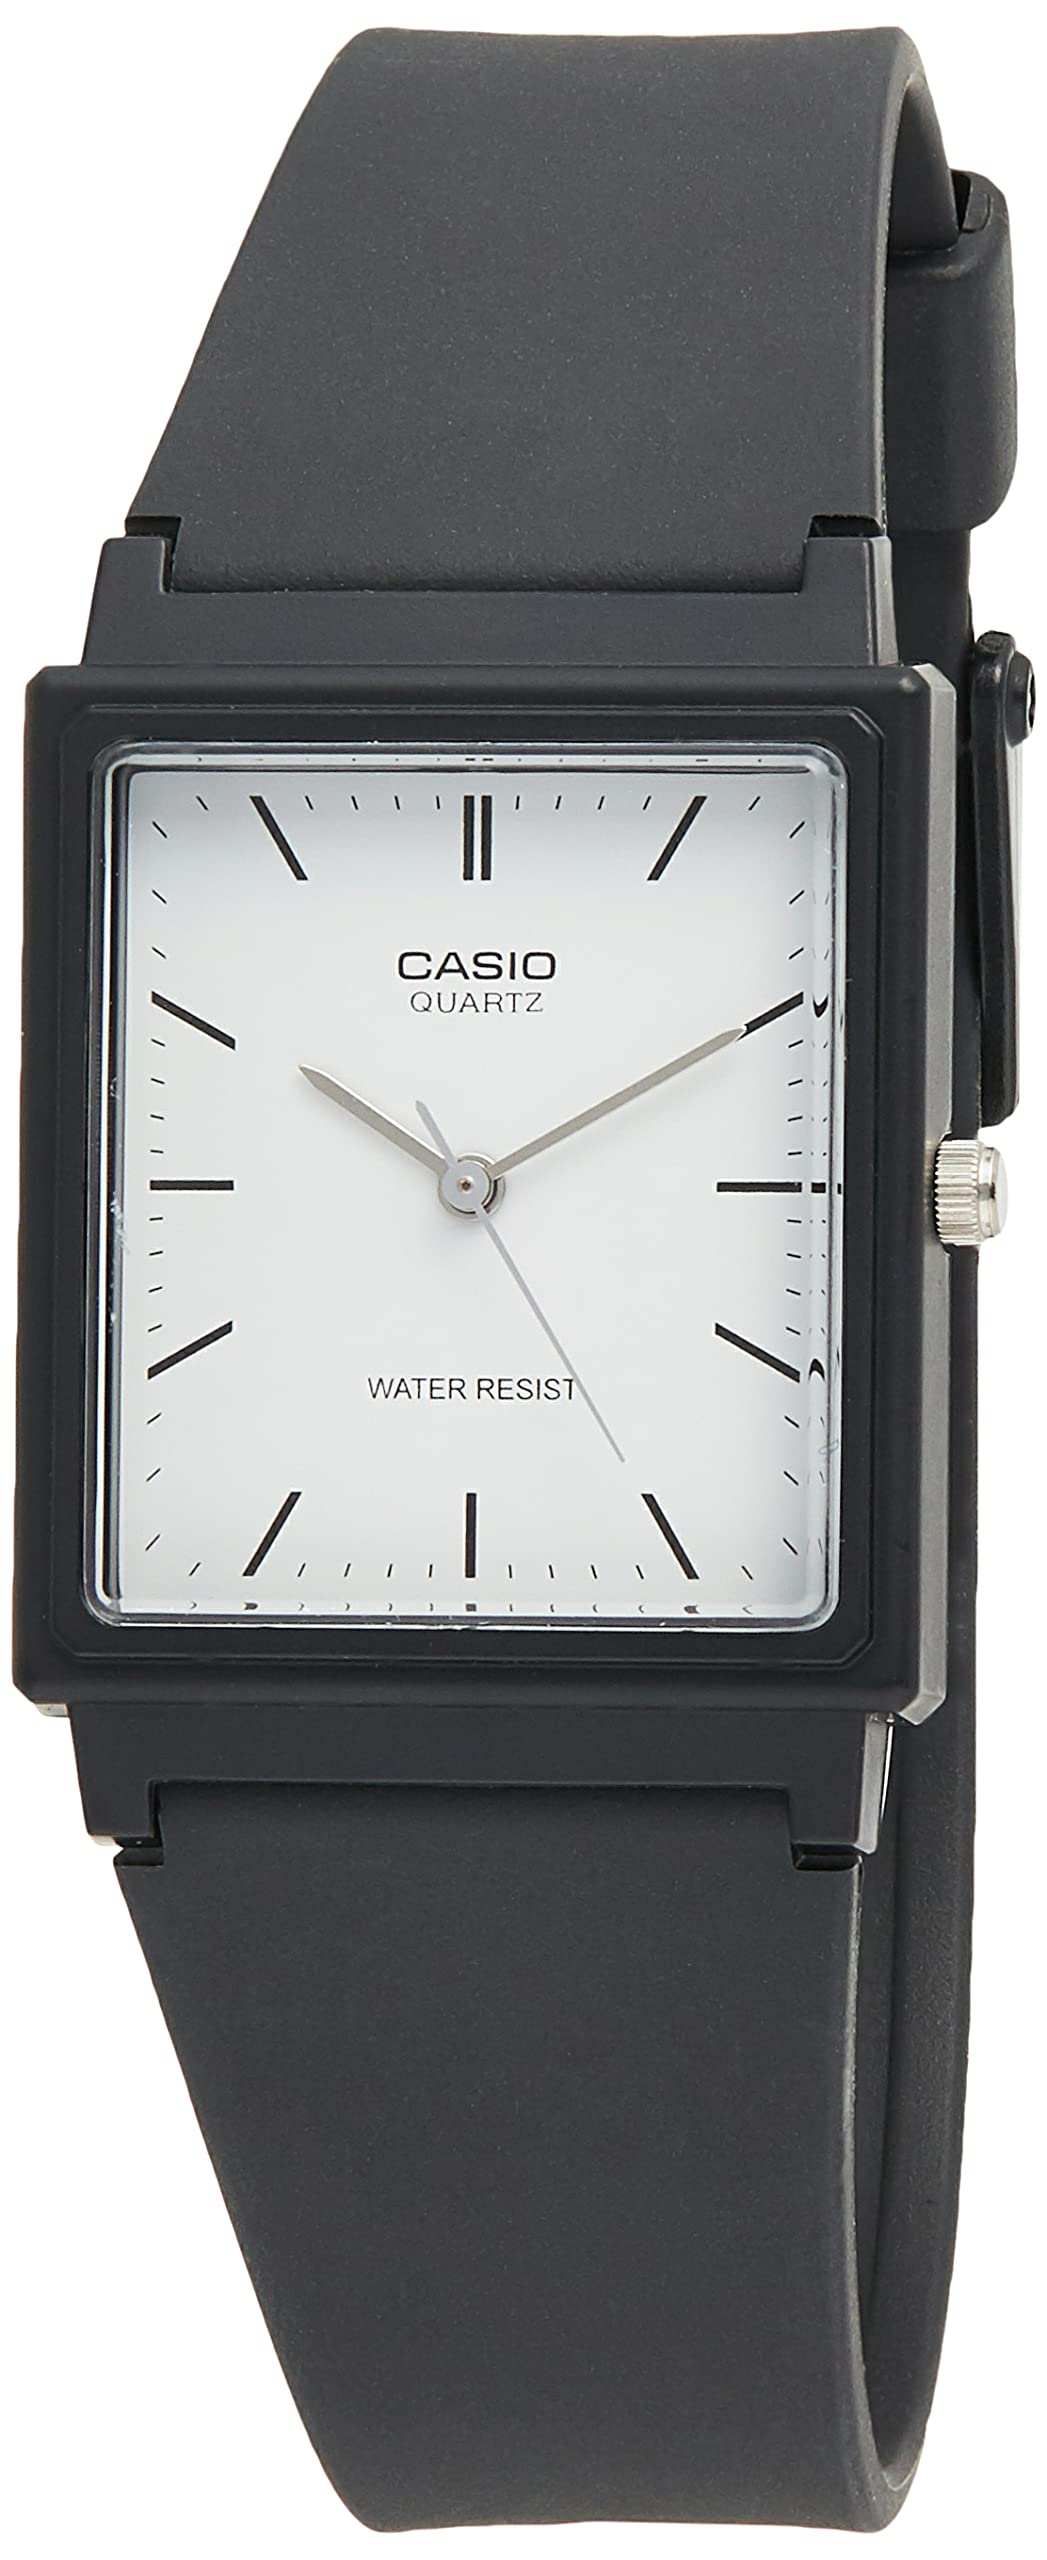 CASIO MQ27-7E Casual Classic Watch